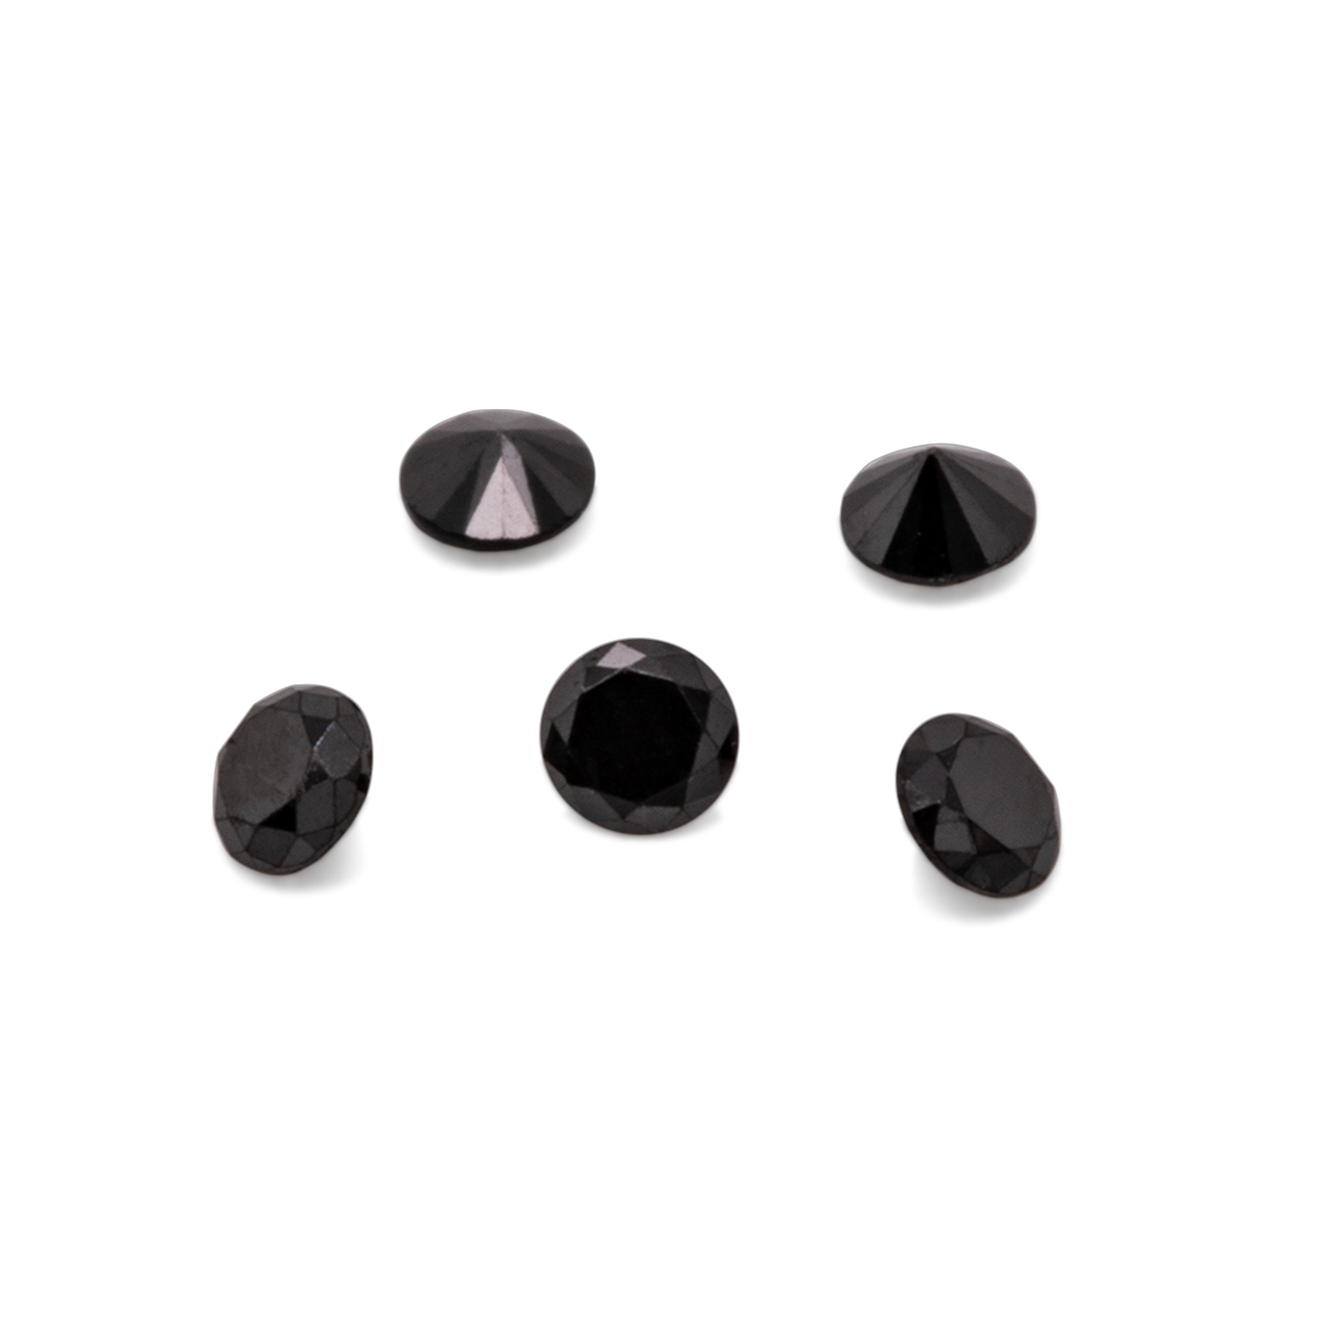 Diamant - schwarz, nicht transparent, rund, 1,5mm, ca. 0,015 cts, Nr. D11058